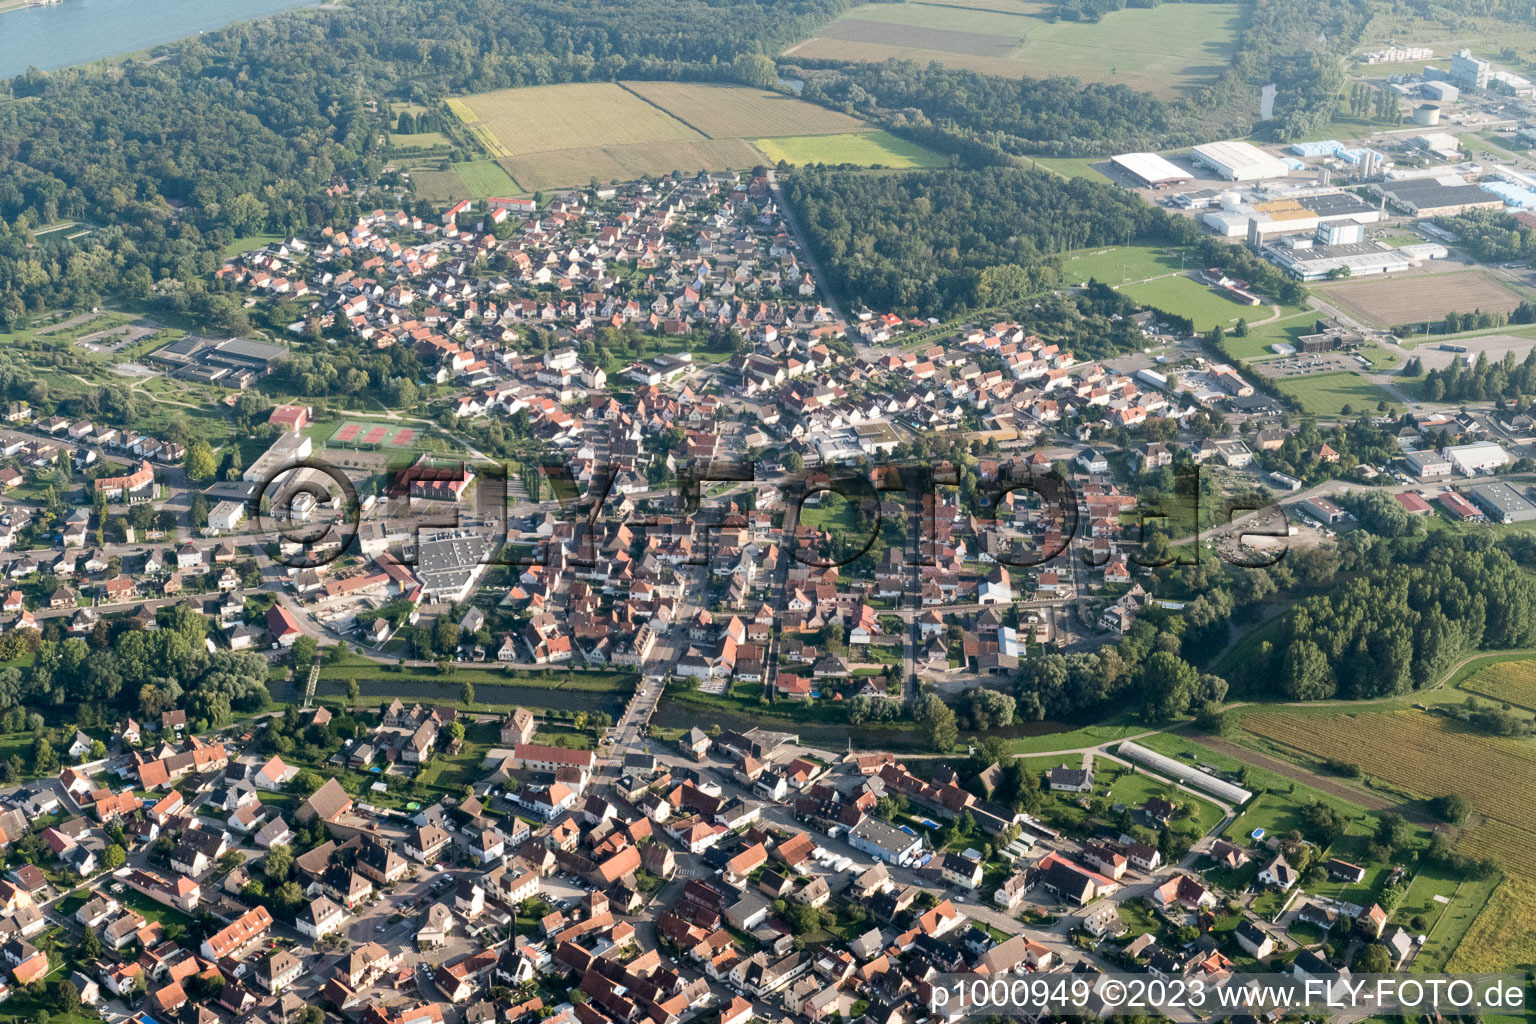 Drusenheim dans le département Bas Rhin, France hors des airs